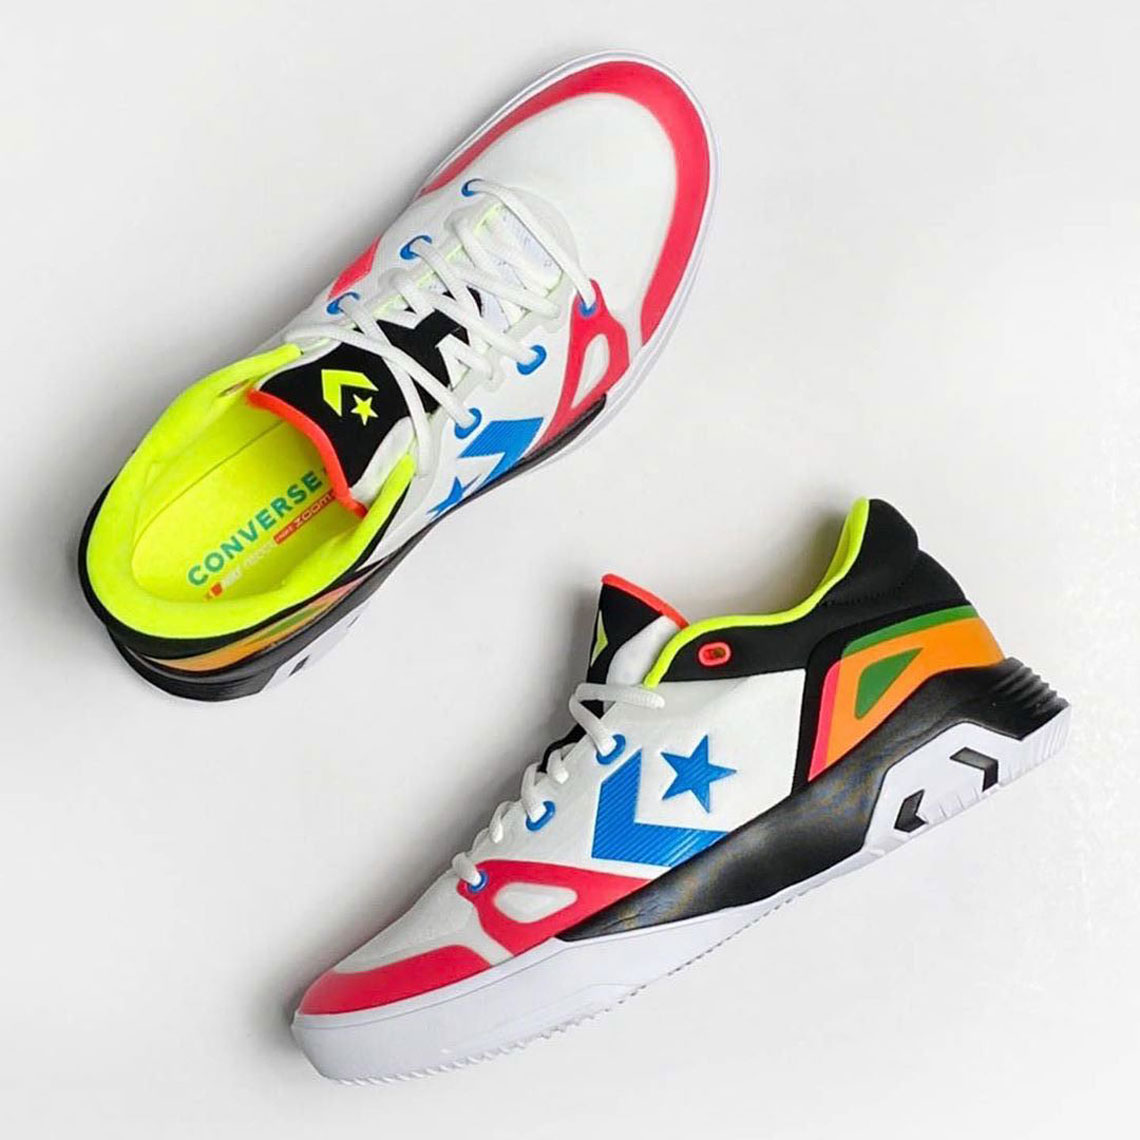 Converse G4 Release Date 2020 | SneakerNews.com